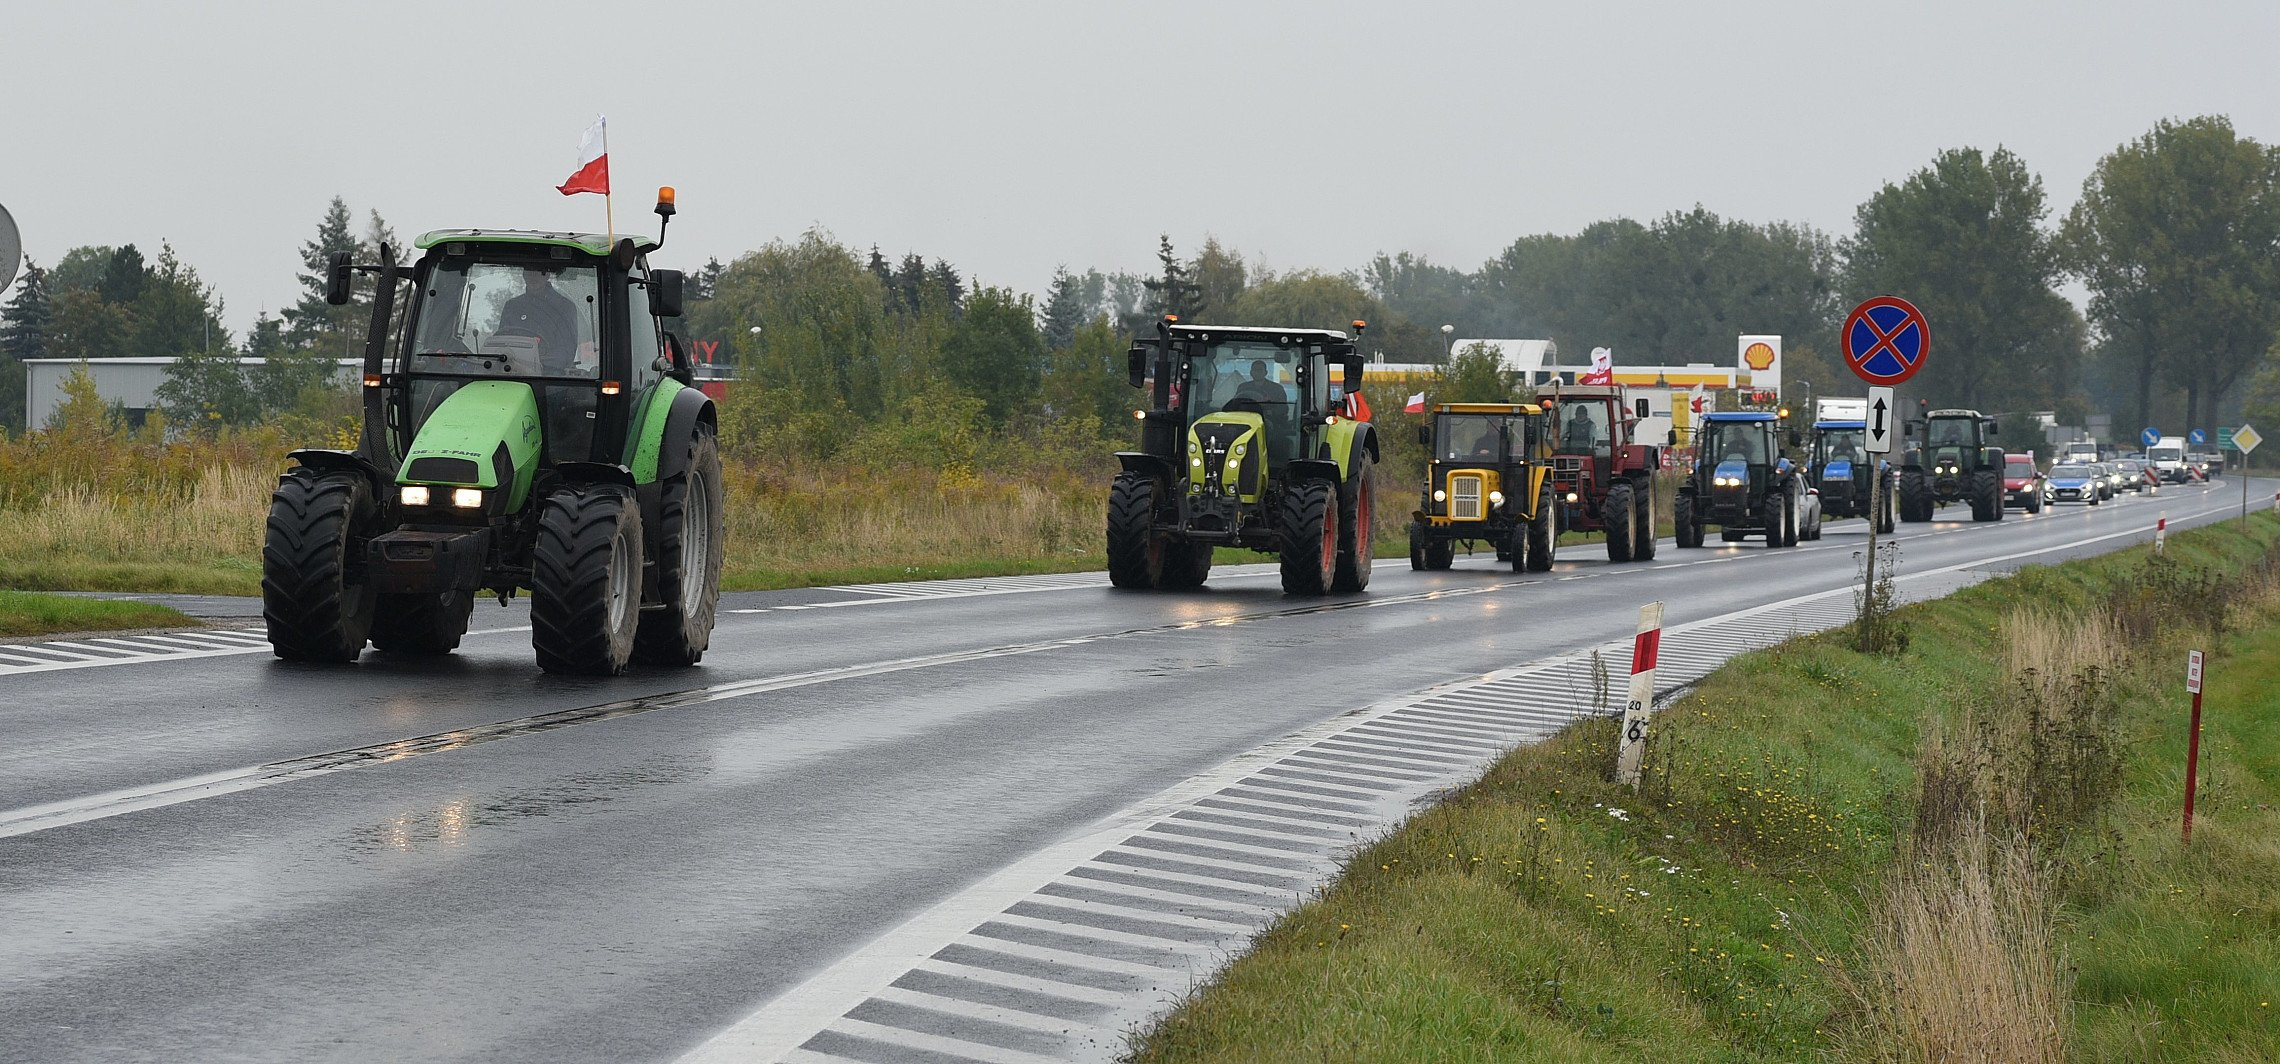 Inowrocław - Protestujący rolnicy przejechali przez miasto